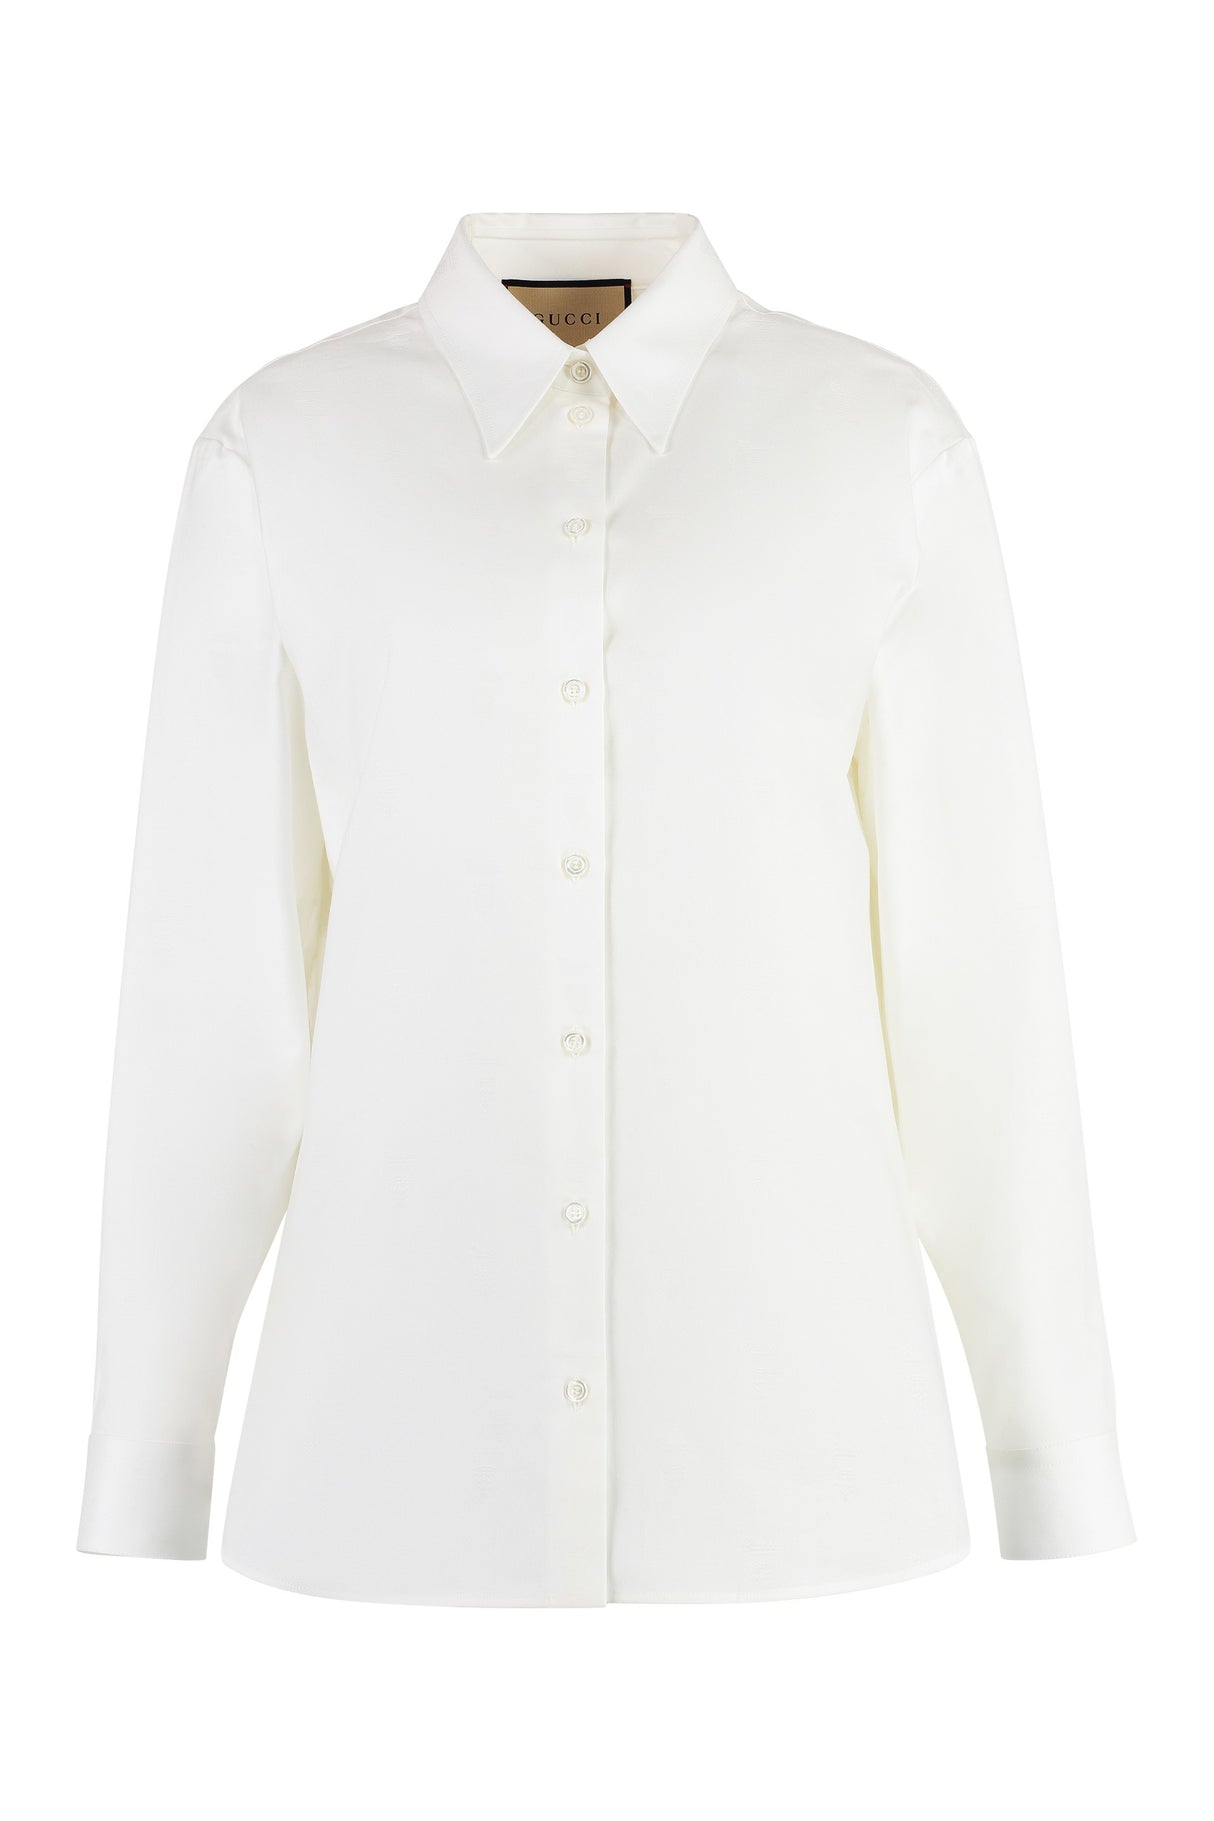 女性用 白綿シャツ - 丸い裾